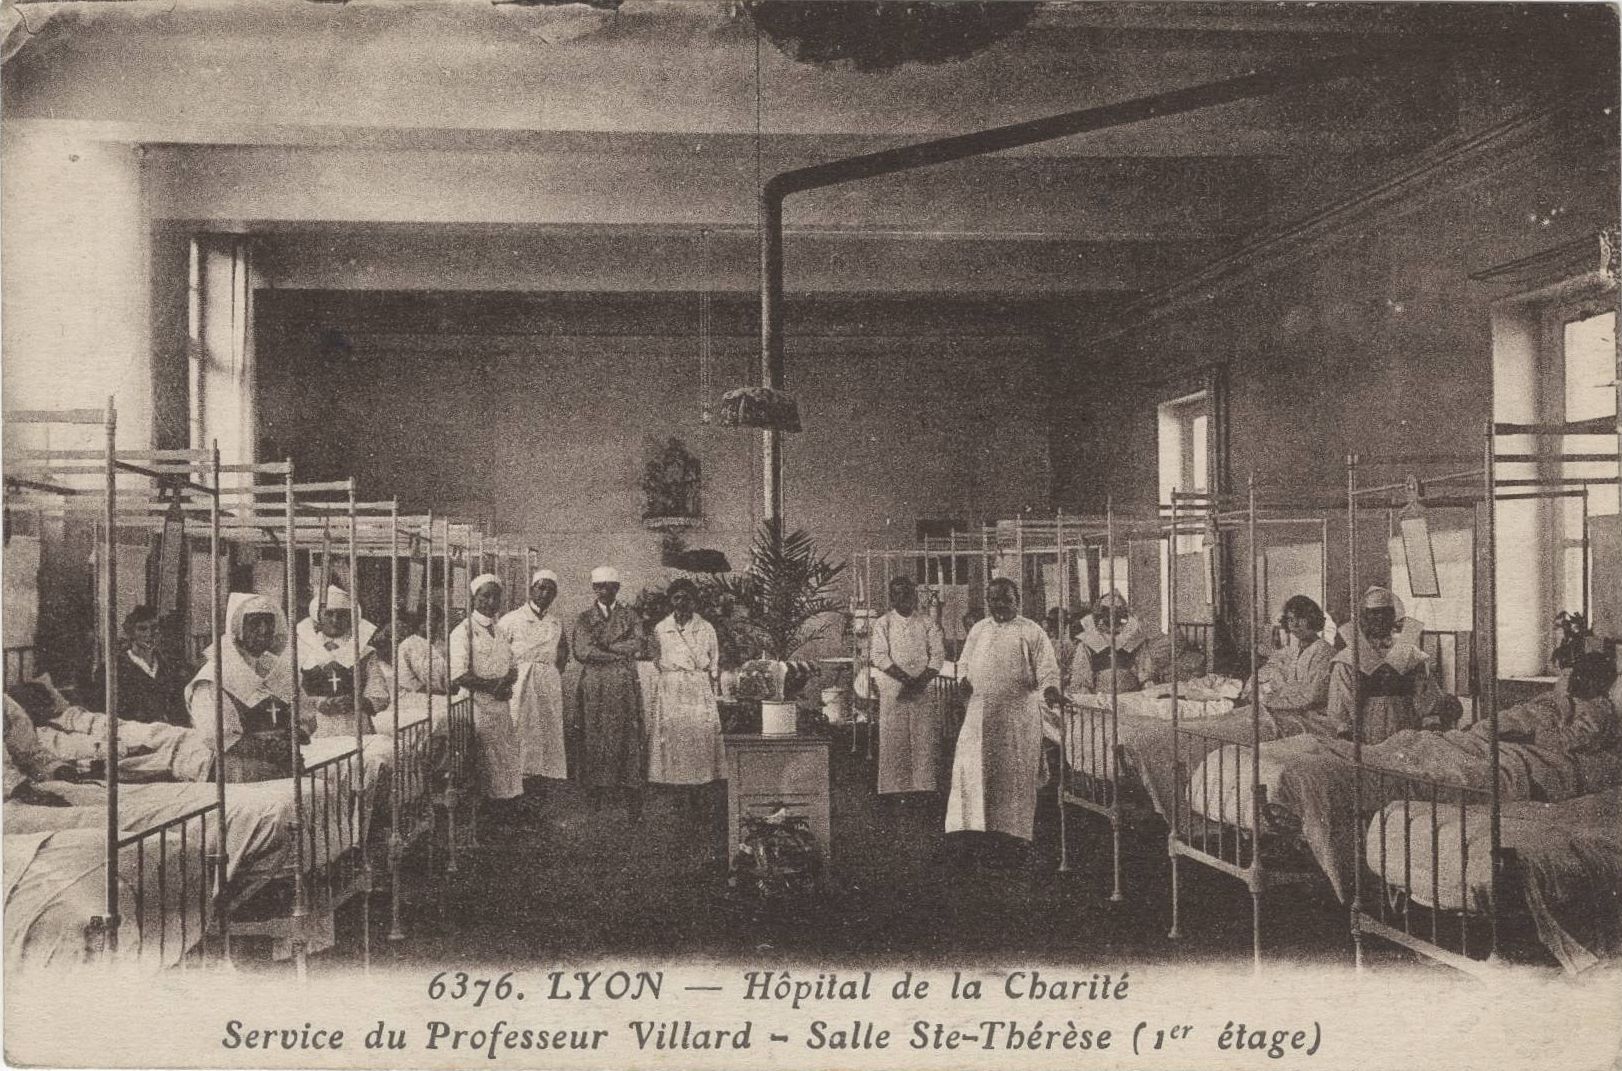 Lyon - Hôpital de la Charité, service du Professeur Villard : carte postale NB (vers 1910, cote : 4FI/3528)